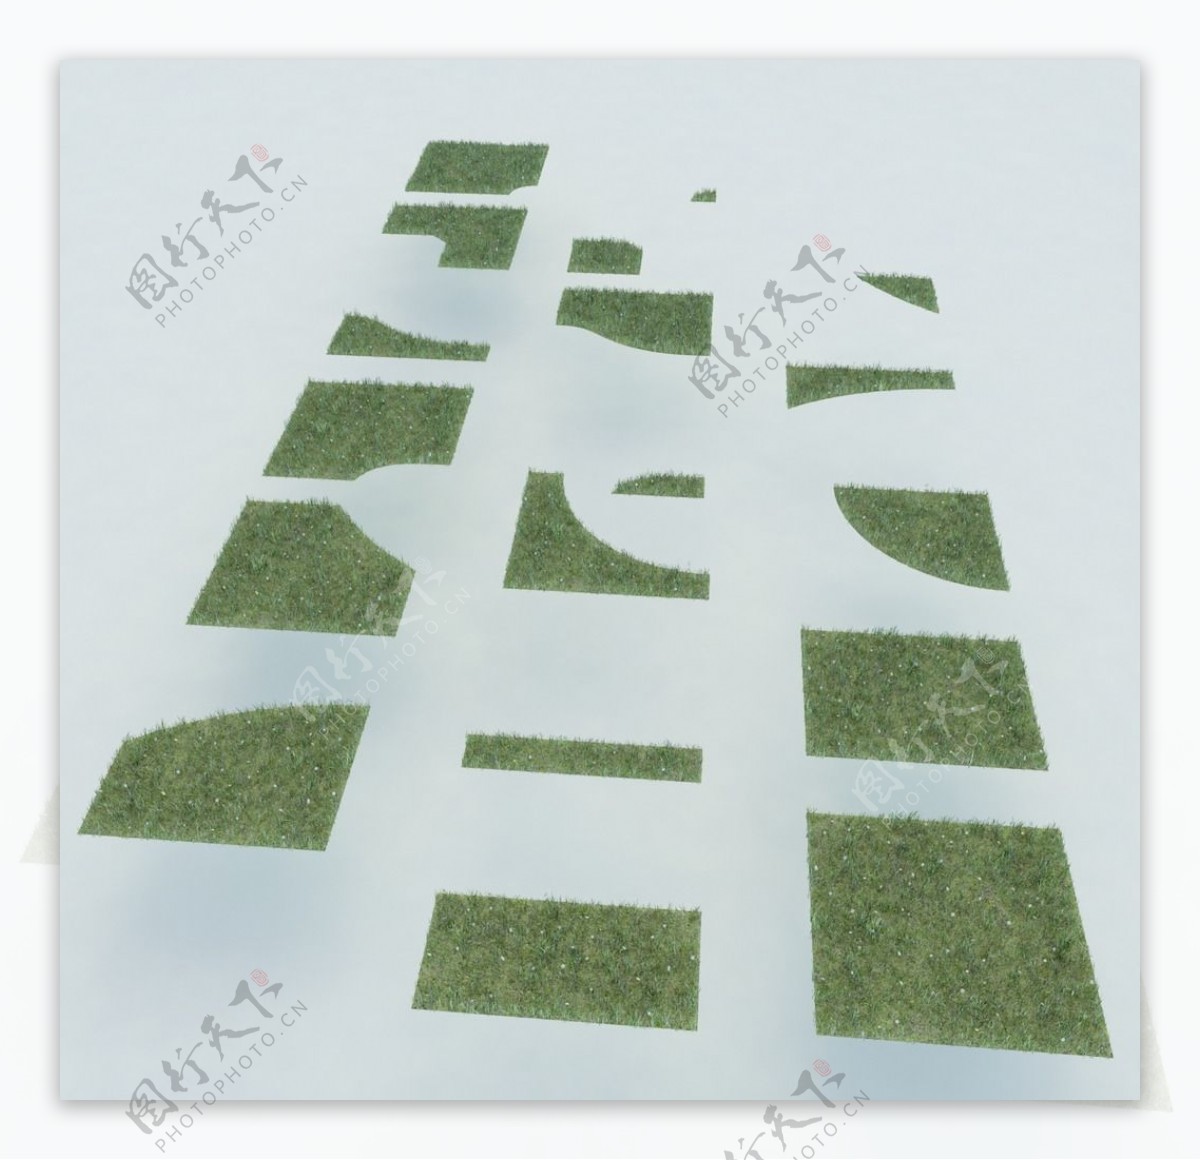 草地植物模型图片